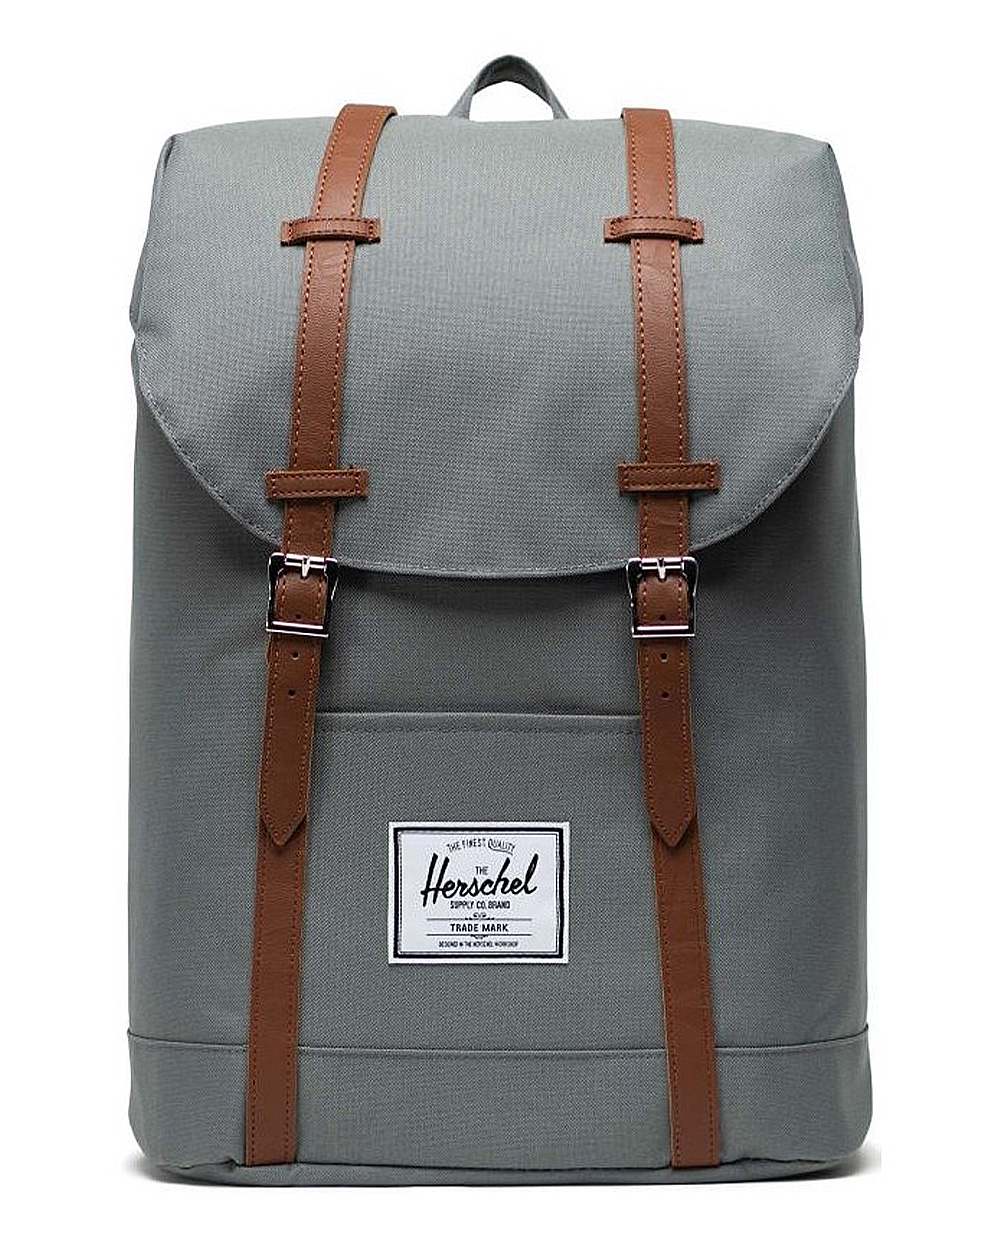 Рюкзак с отделением для 15 ноутбука Herschel Retreat Sedona отзывы